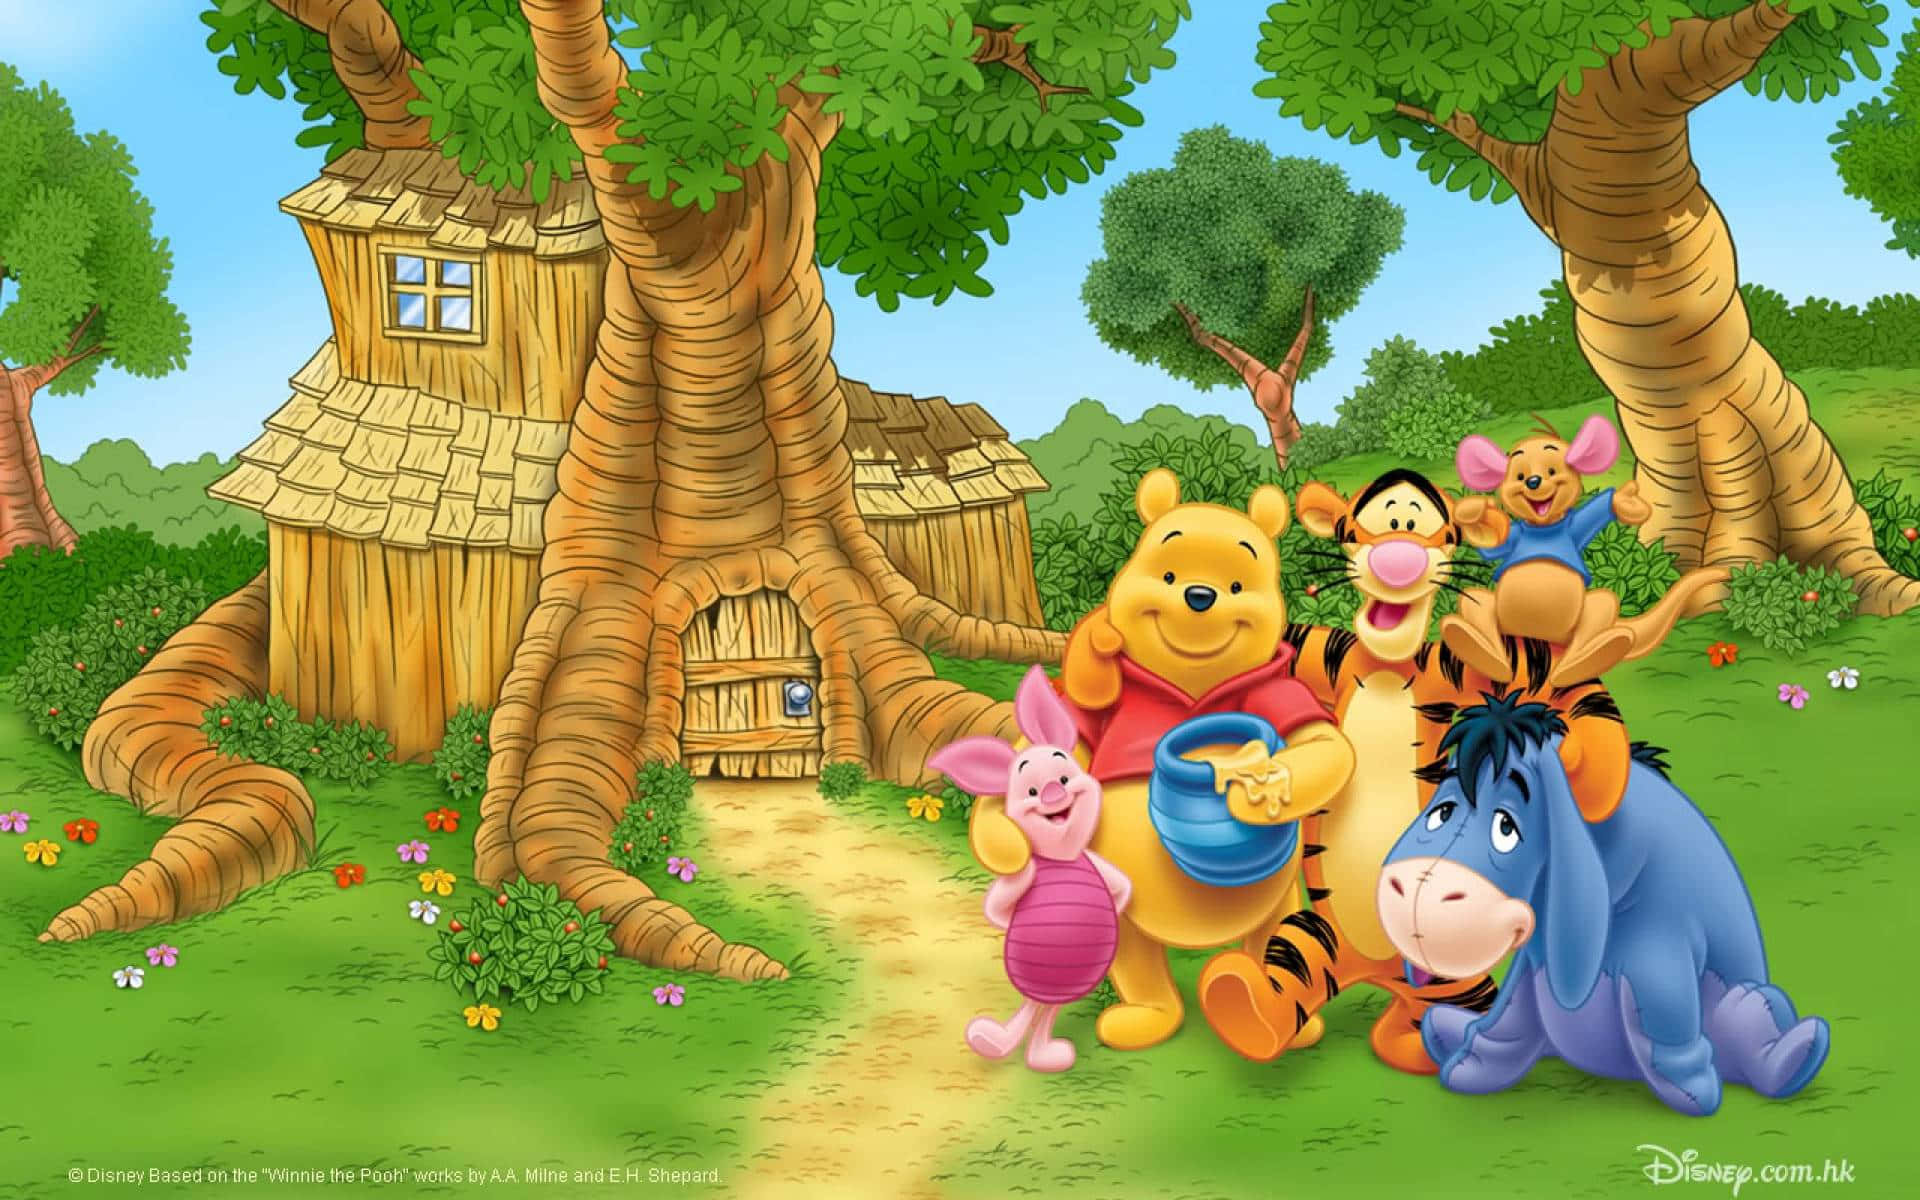 Migliorsfondo Disney Di Winnie The Pooh E I Suoi Amici.